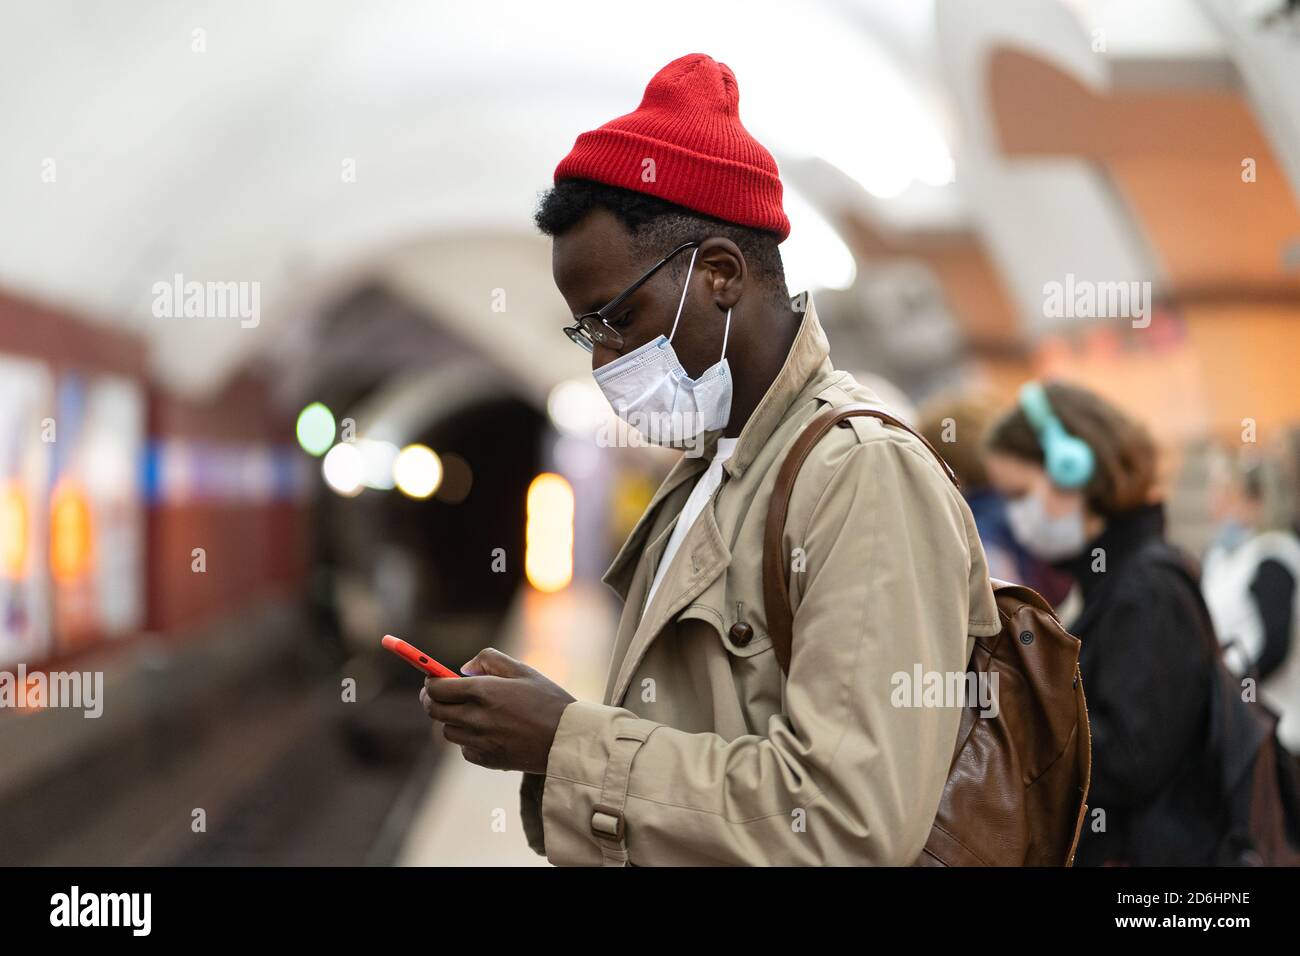 Schwarzer Tausendjähriger Mann im Trenchcoat, roter Hut mit Gesichtsmaske als Schutz gegen covid-19, Grippe-Virus, wartet auf den Zug an der U-Bahn-Station, usi Stockfoto